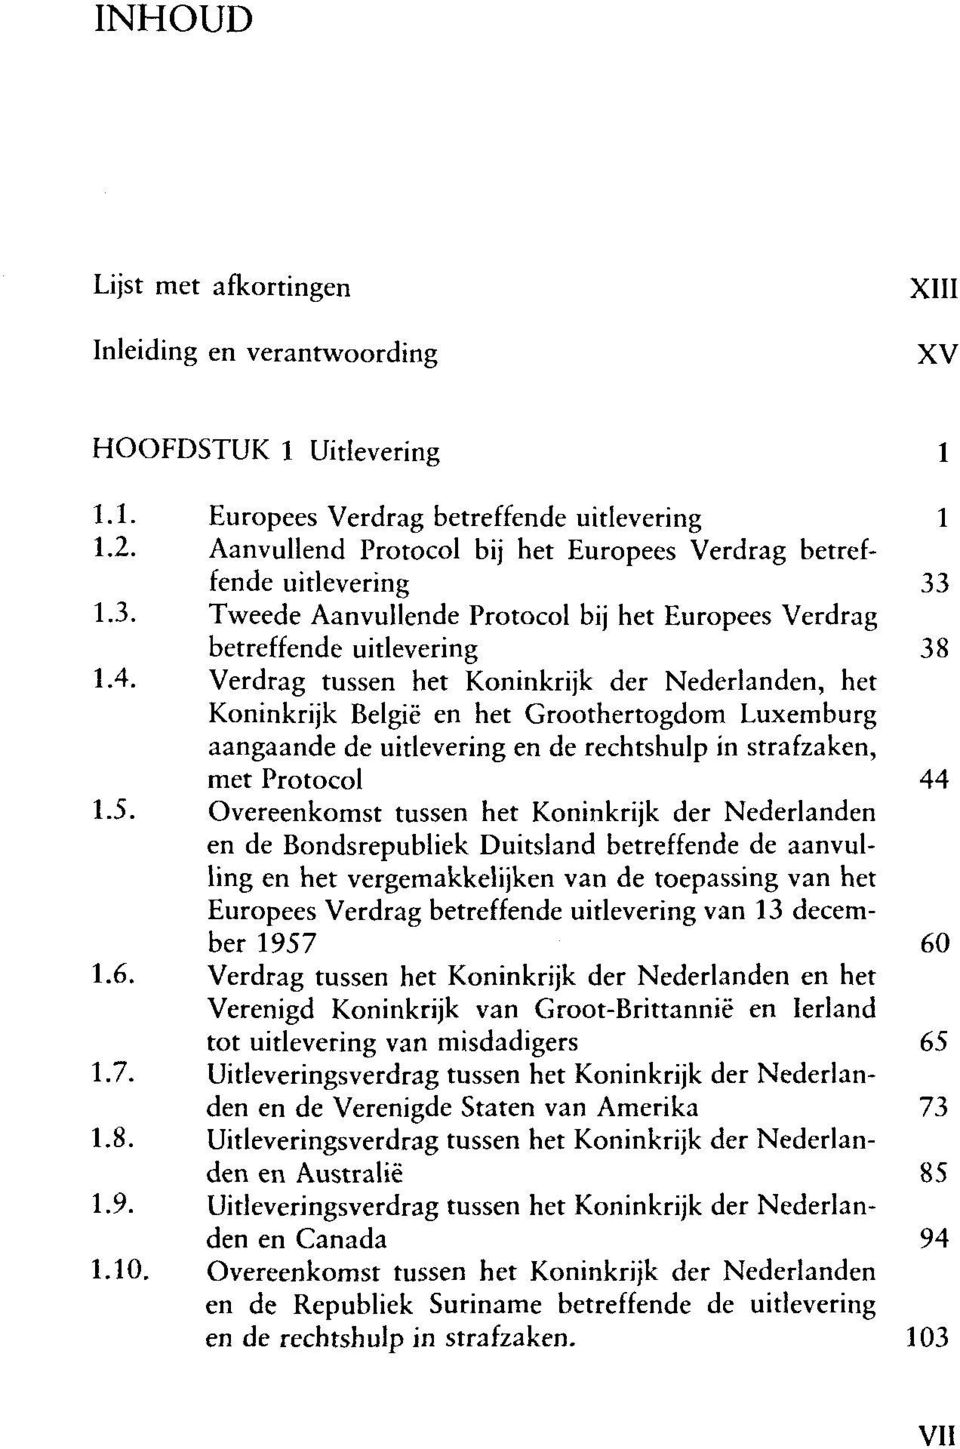 Verdrag tussen het Koninkrijk der Nederlanden, het aangaande de uitlevering en de rechtshulp in strafzaken, met Protocol 44 1.5.